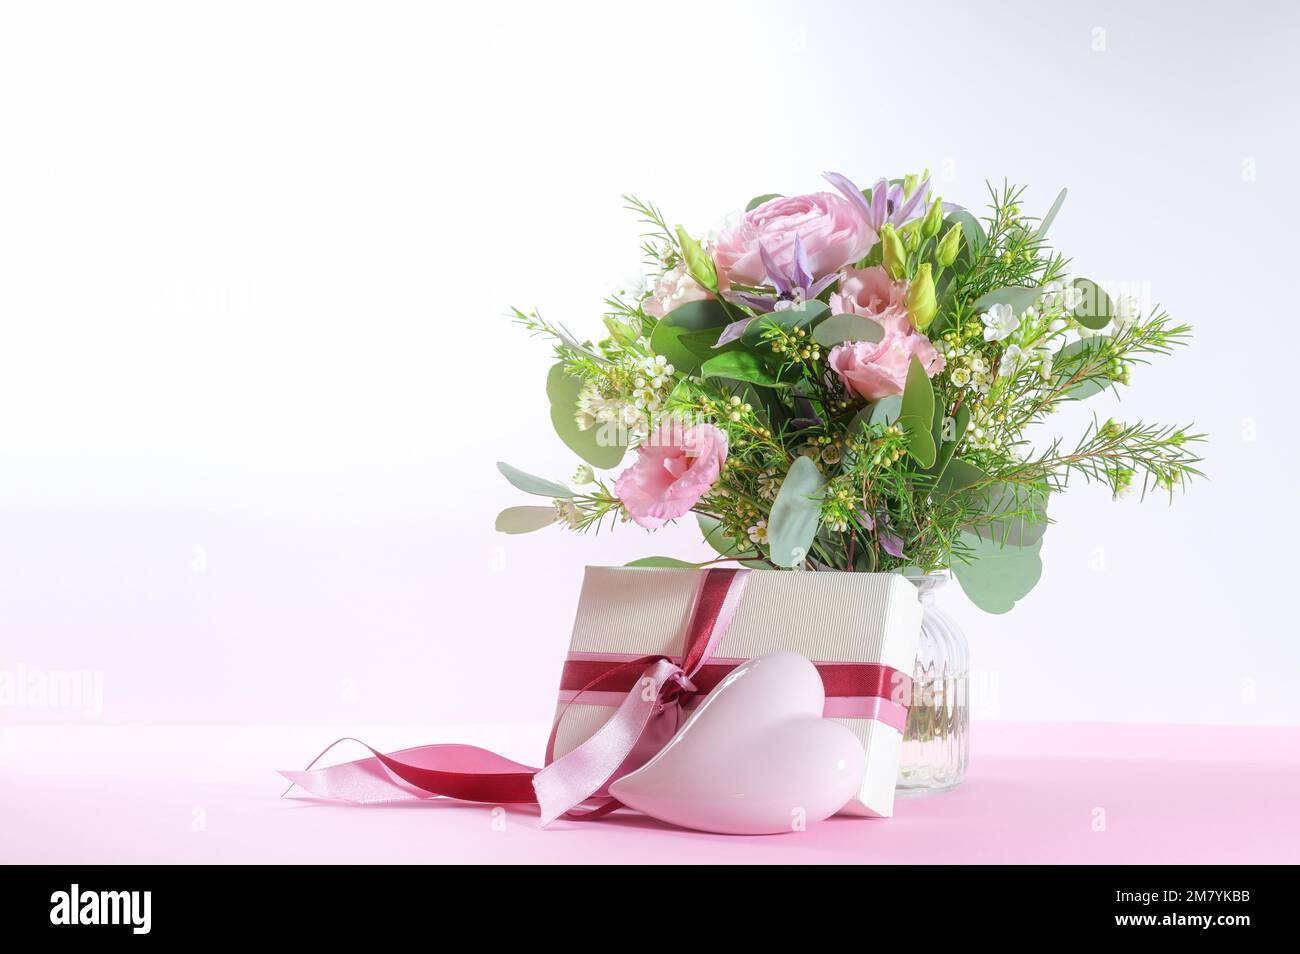 Fleurs, cadeau et coeur rose clair, symbole romantique d'amour pour des vacances comme mariage, jour de la Saint-Valentin, anniversaire ou jour de la mère, fond lumineux avec Banque D'Images